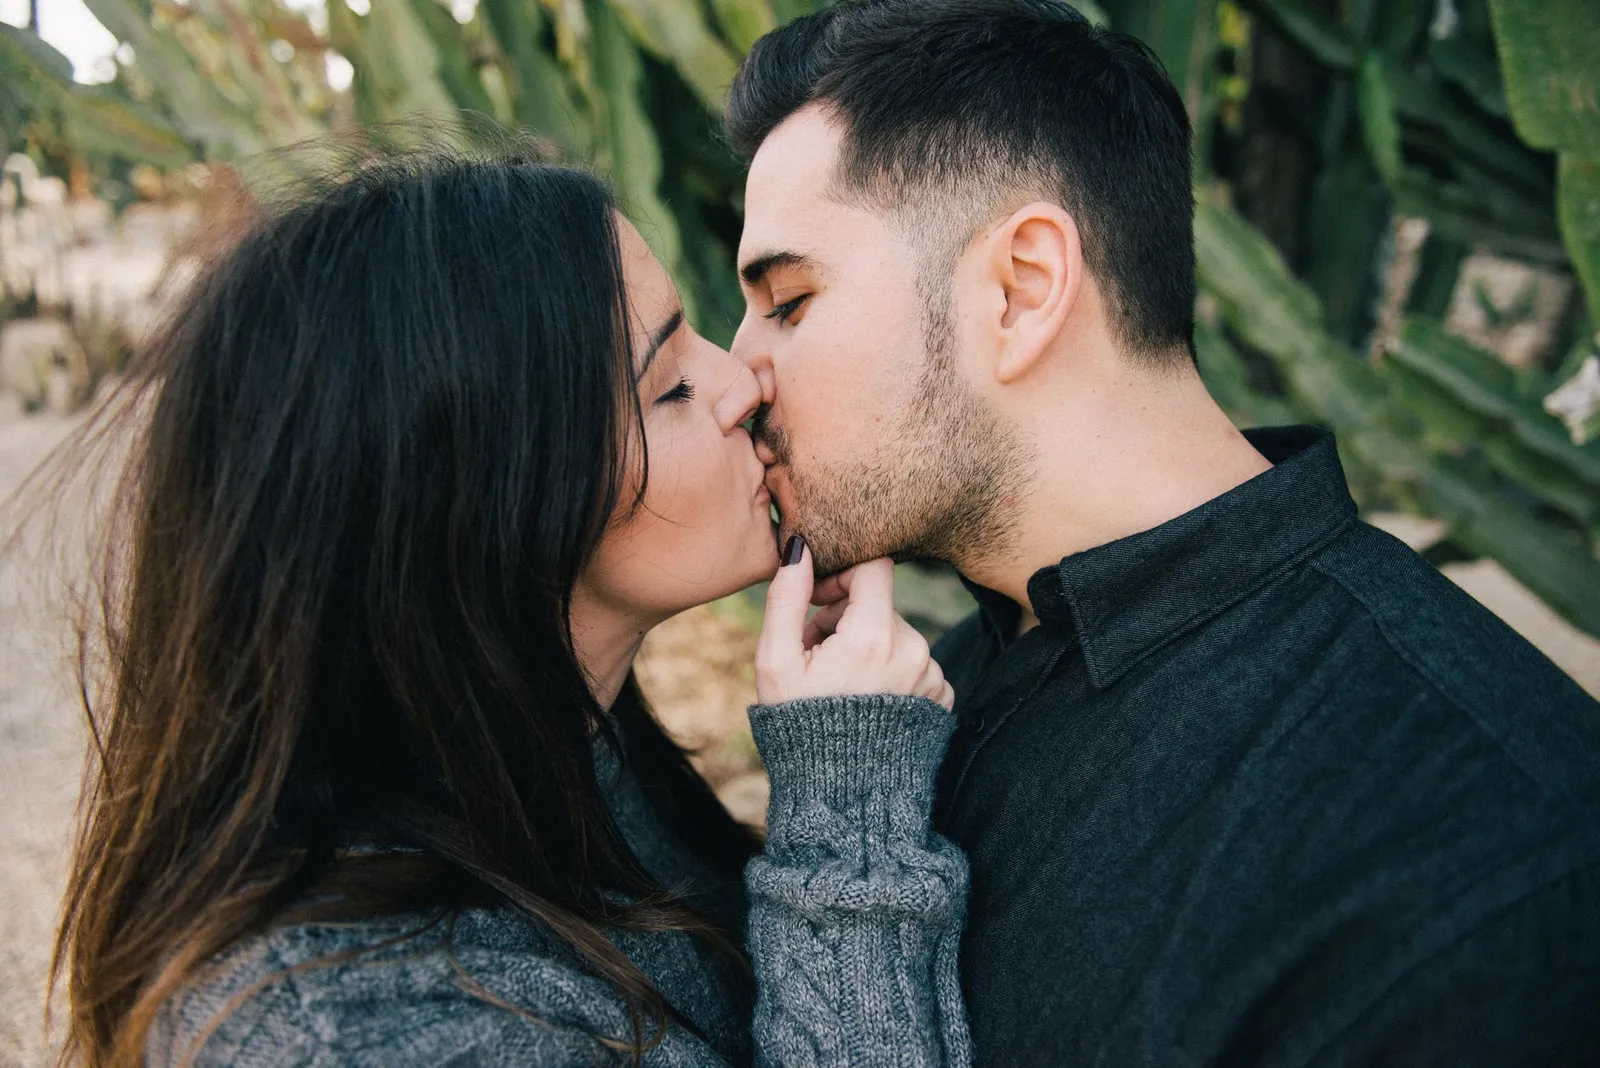 Catat! Inilah 15 Jenis Ciuman yang Paling Disukai Laki-laki